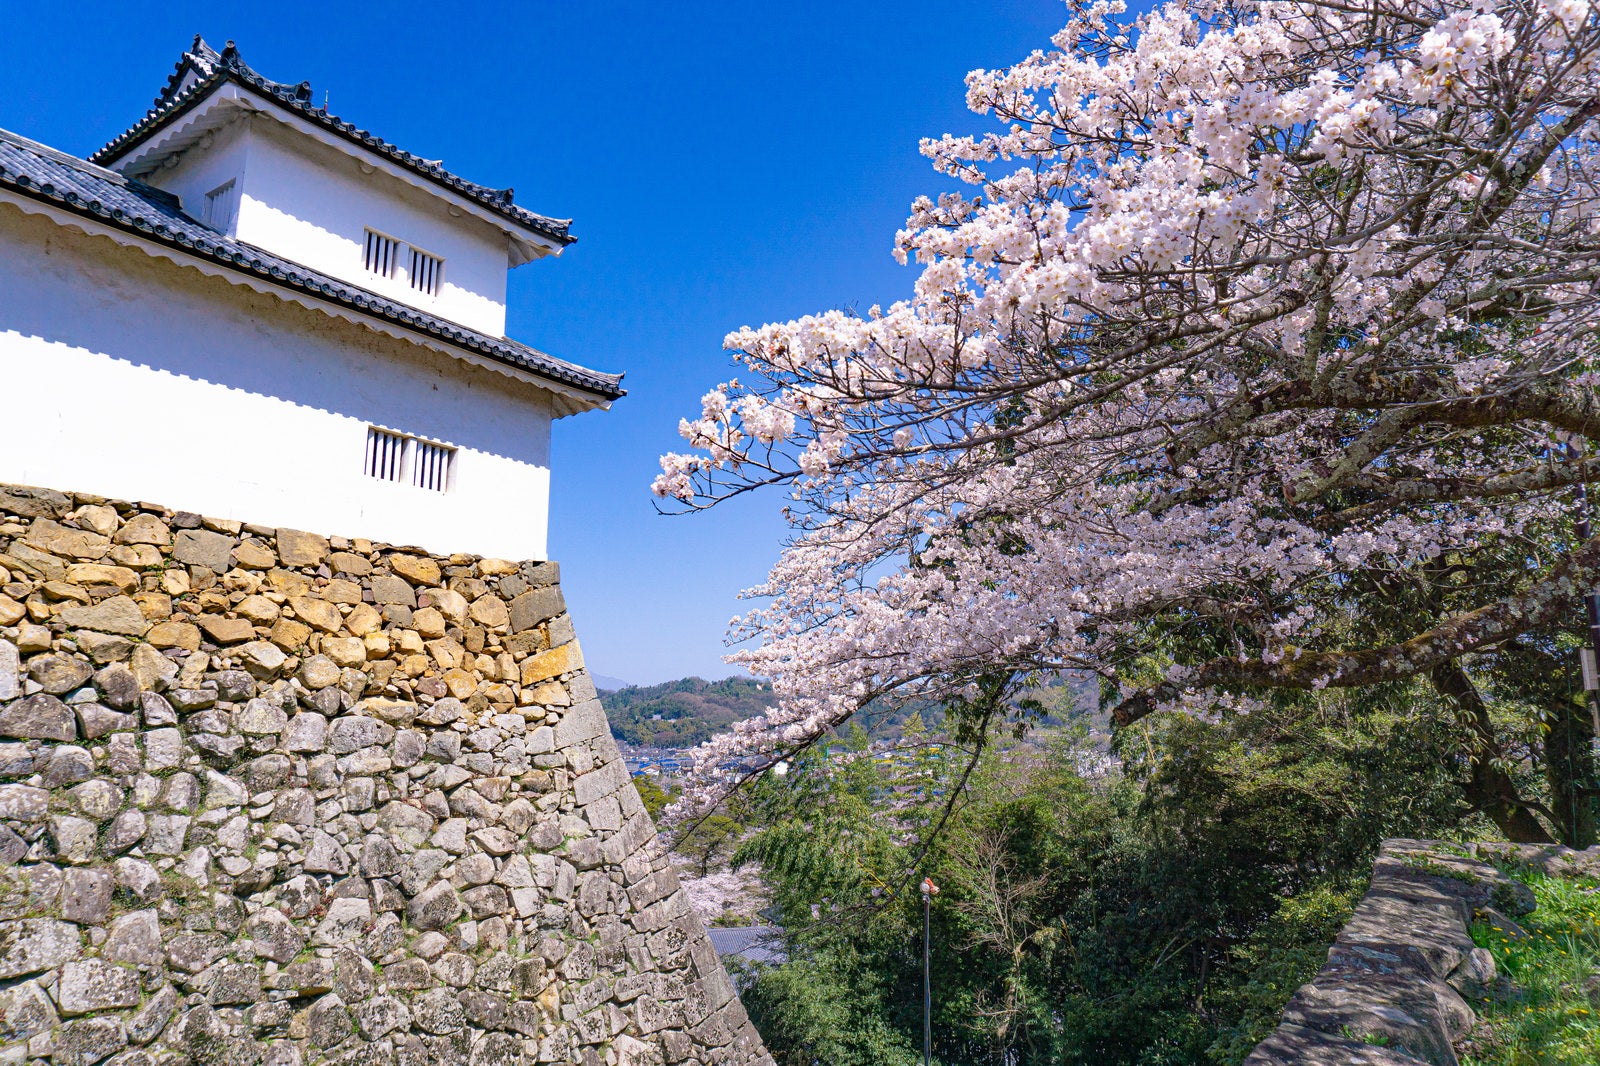 「廊下橋から見る桜と天秤櫓と土台の石垣」の写真